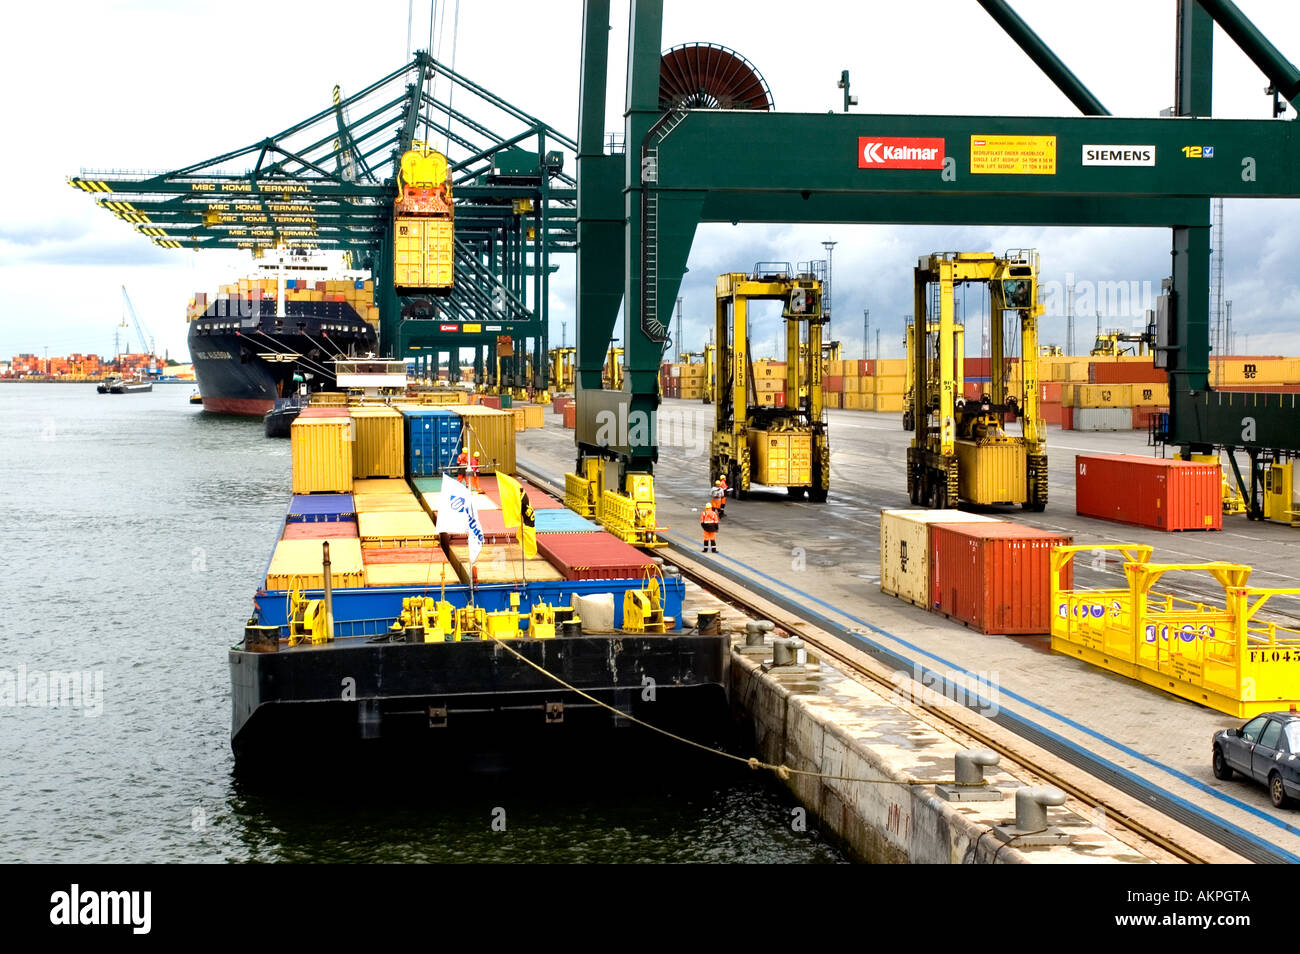 Hafen Von Antwerpen Belgien Hafen Container Transport Container Boot Schiff Stockfotografie Alamy